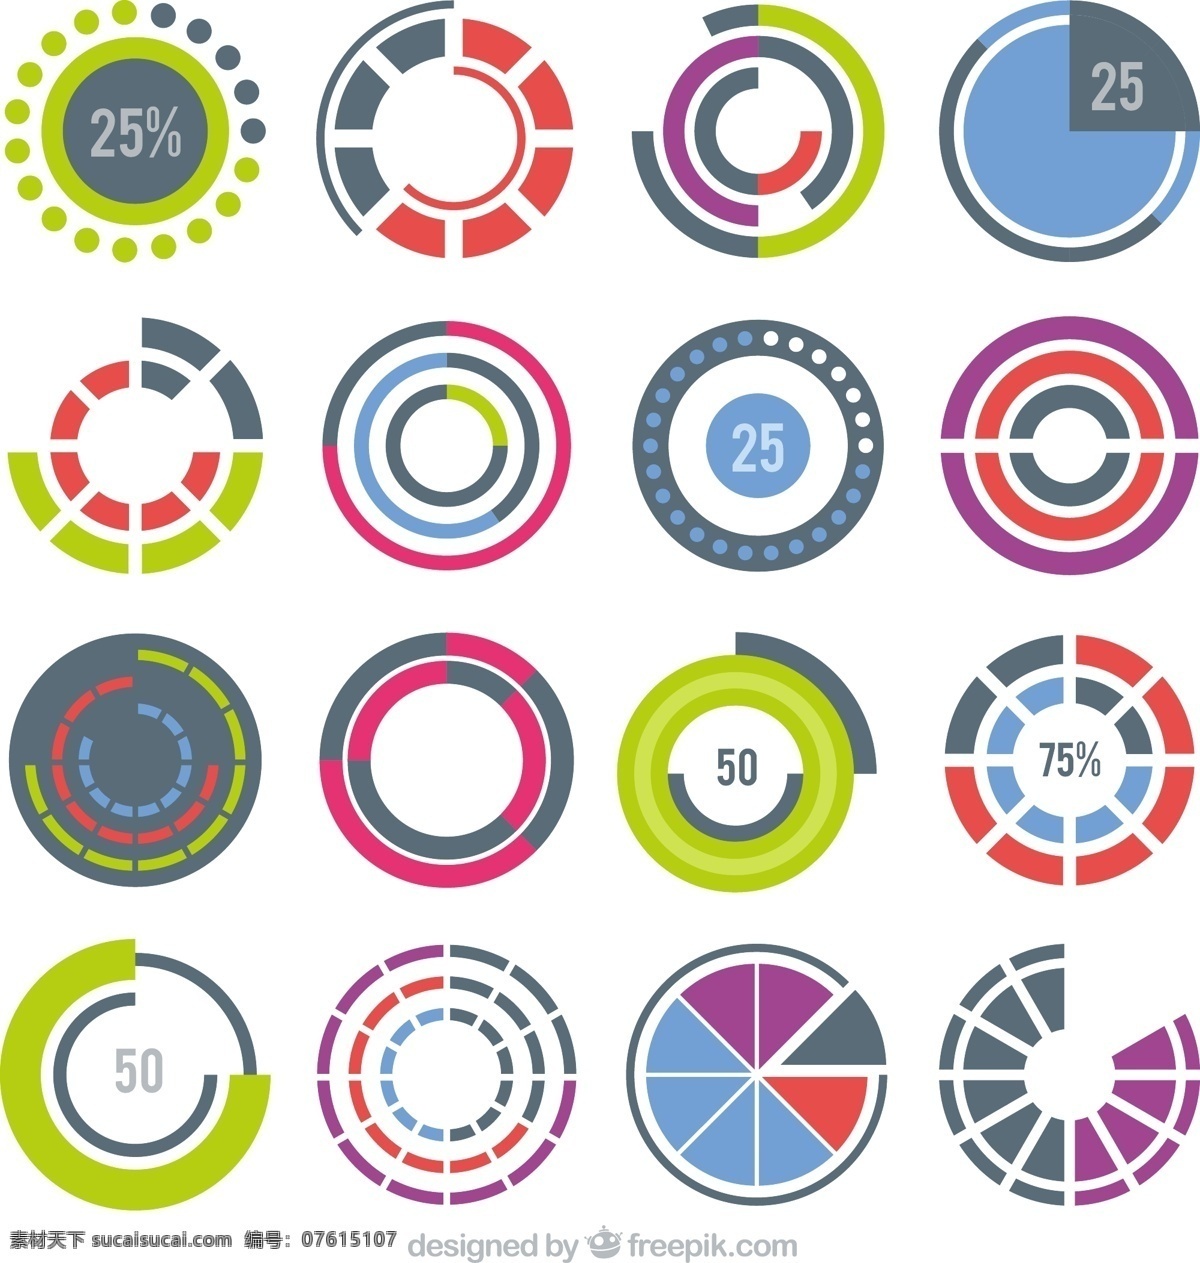 七彩轮预加载 图标 计算机 圆形 网络 互联网 颜色 网站 图形 符号 色彩艳丽 速度 数据 加载 进度 上传